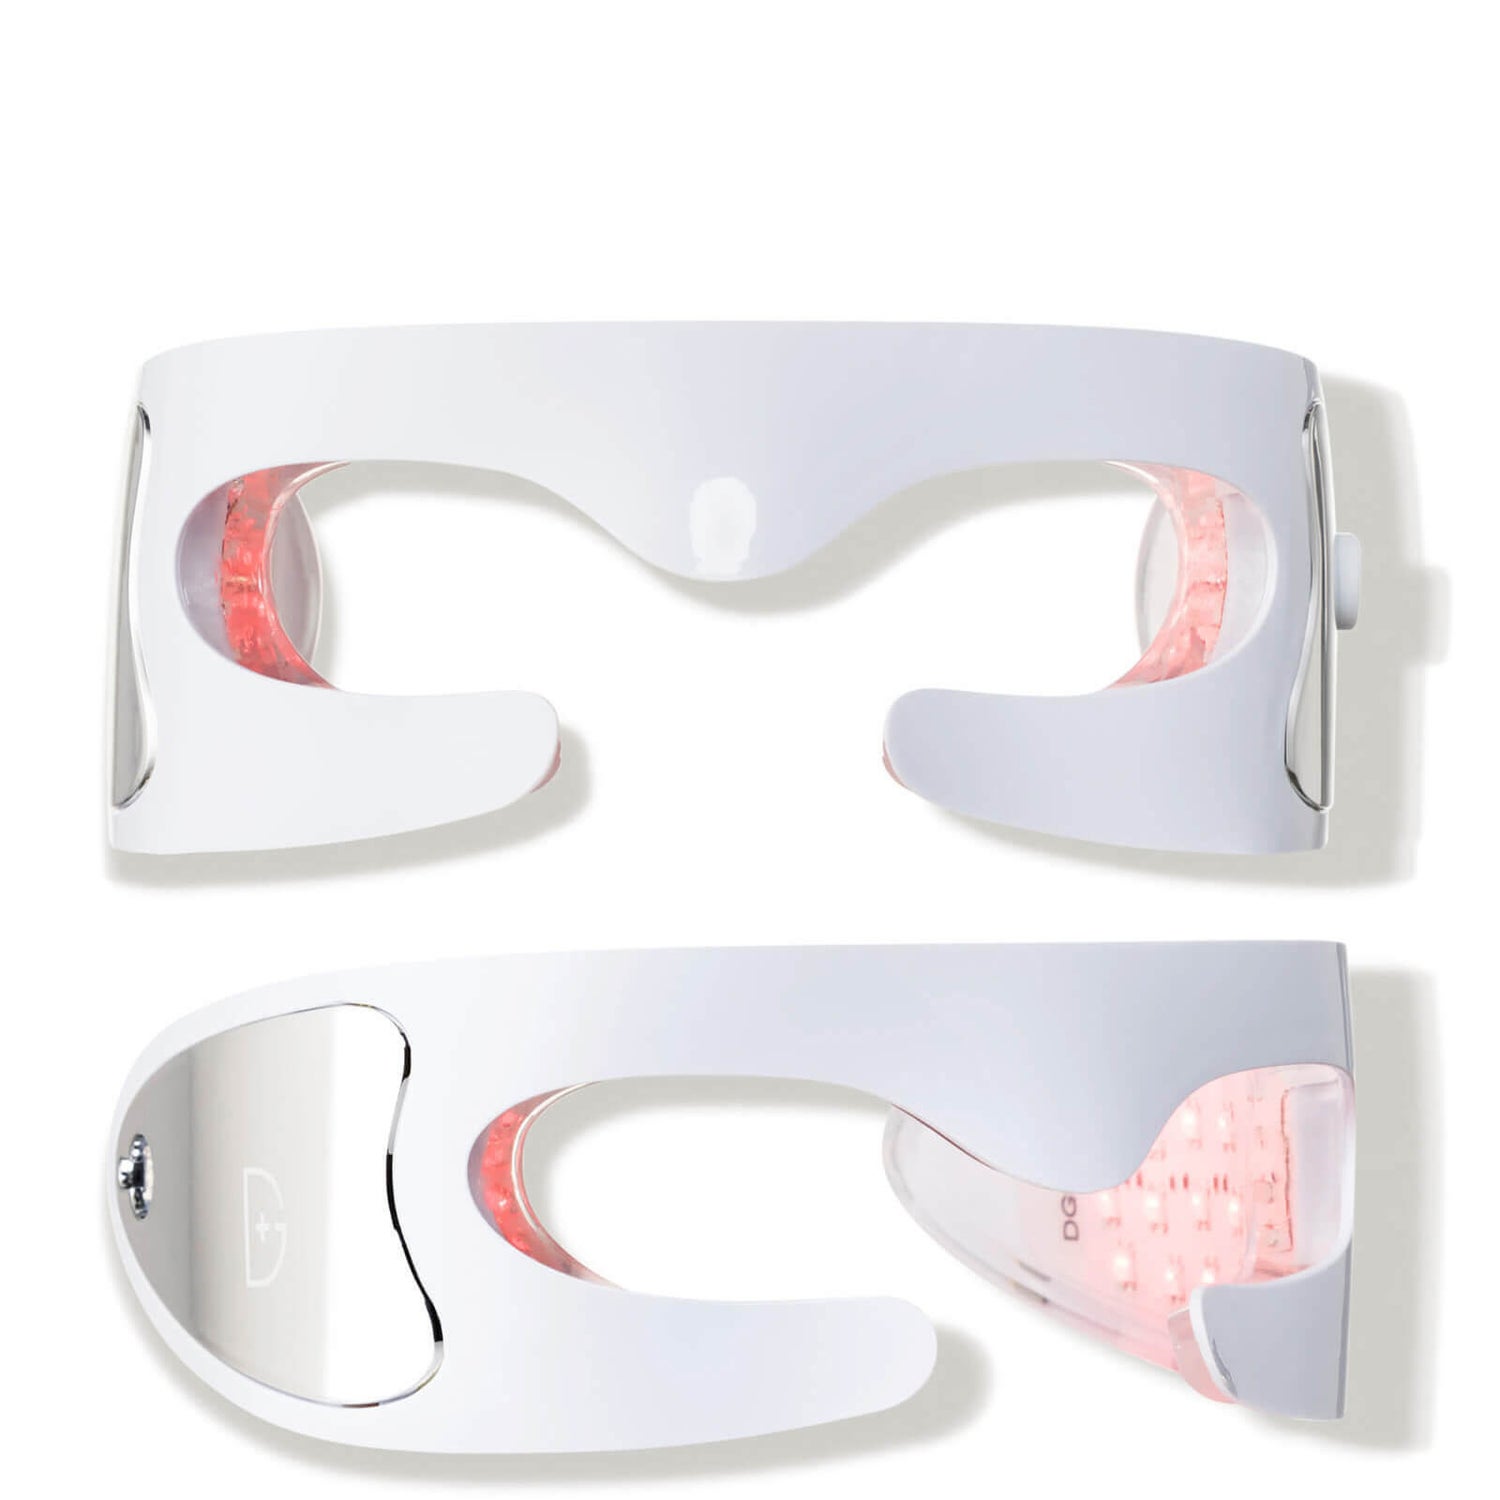 Dr Dennis Gross Skincare DRx Spectralite EyeCare Pro